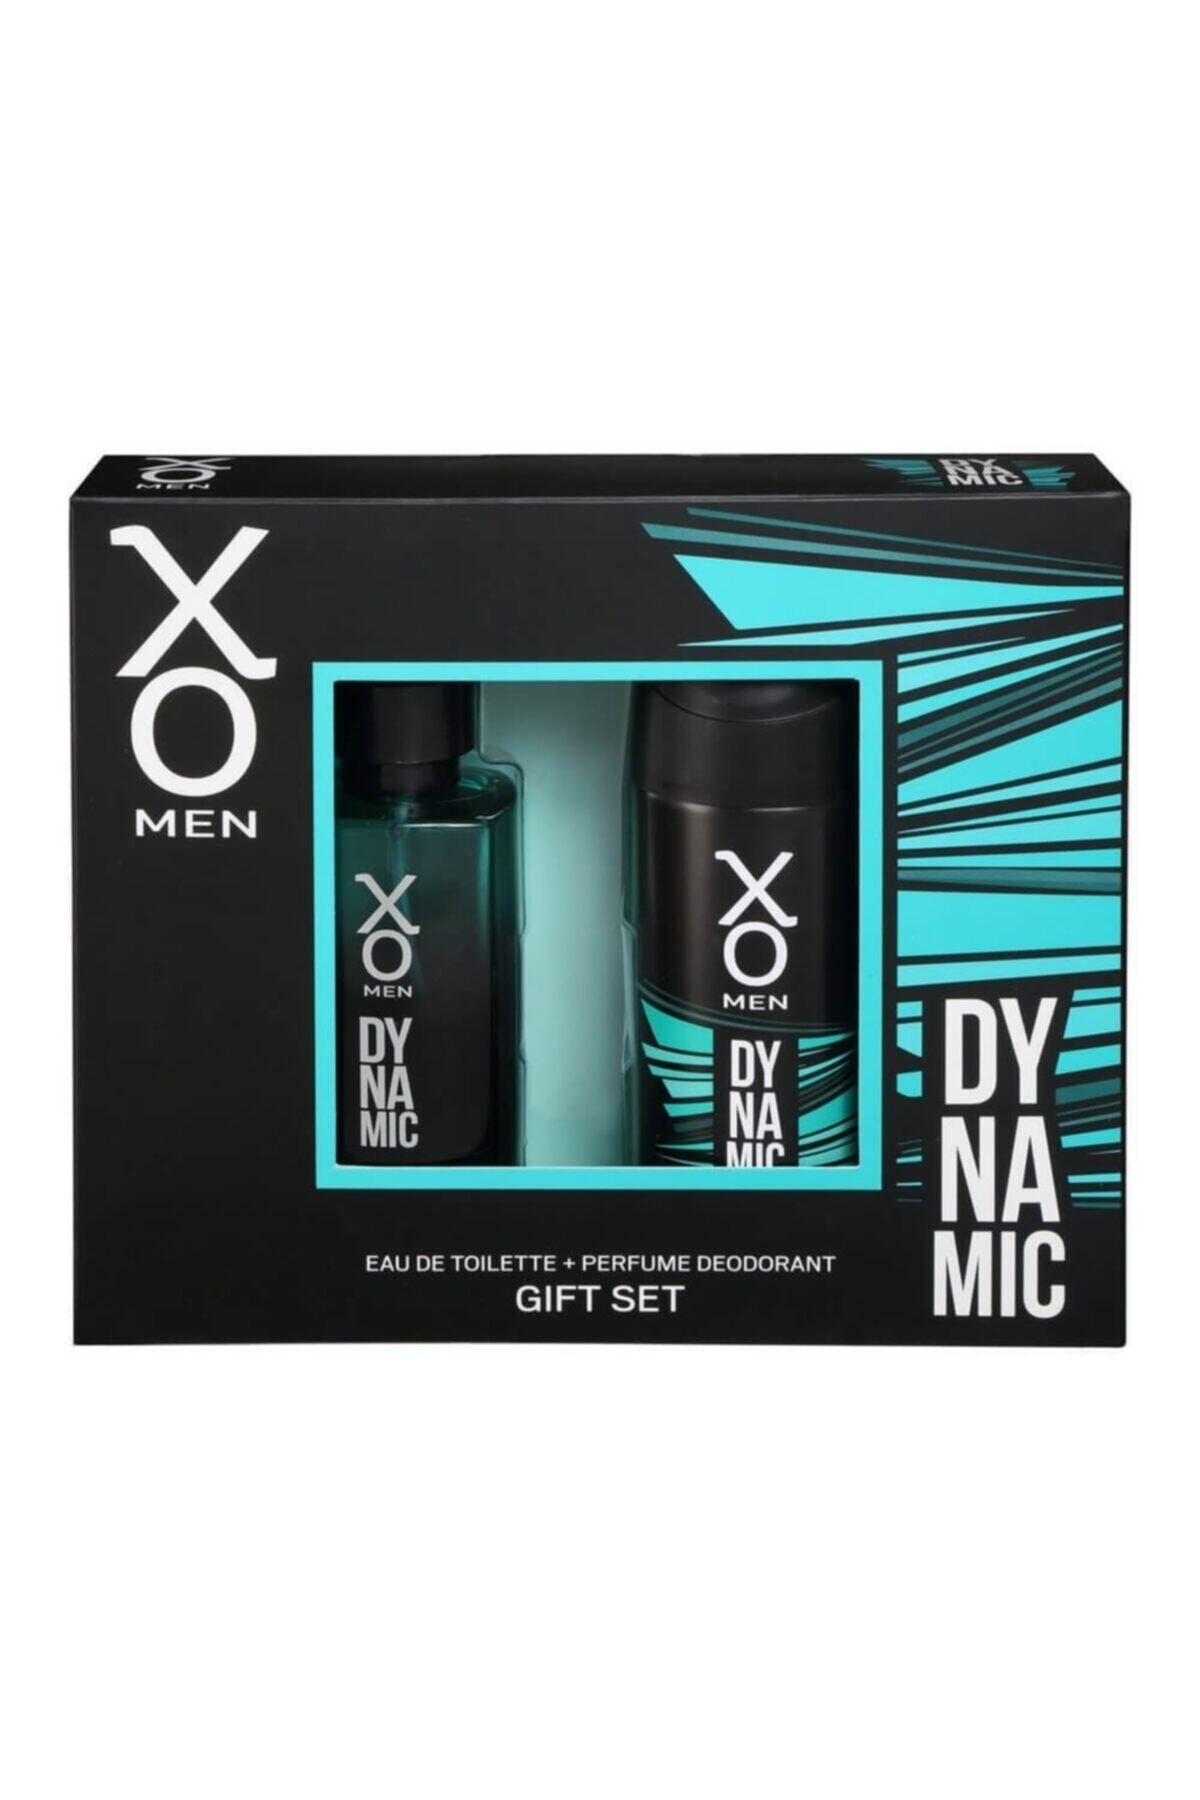 Xo Dynamic Erkek Parfüm & Deodorant Set